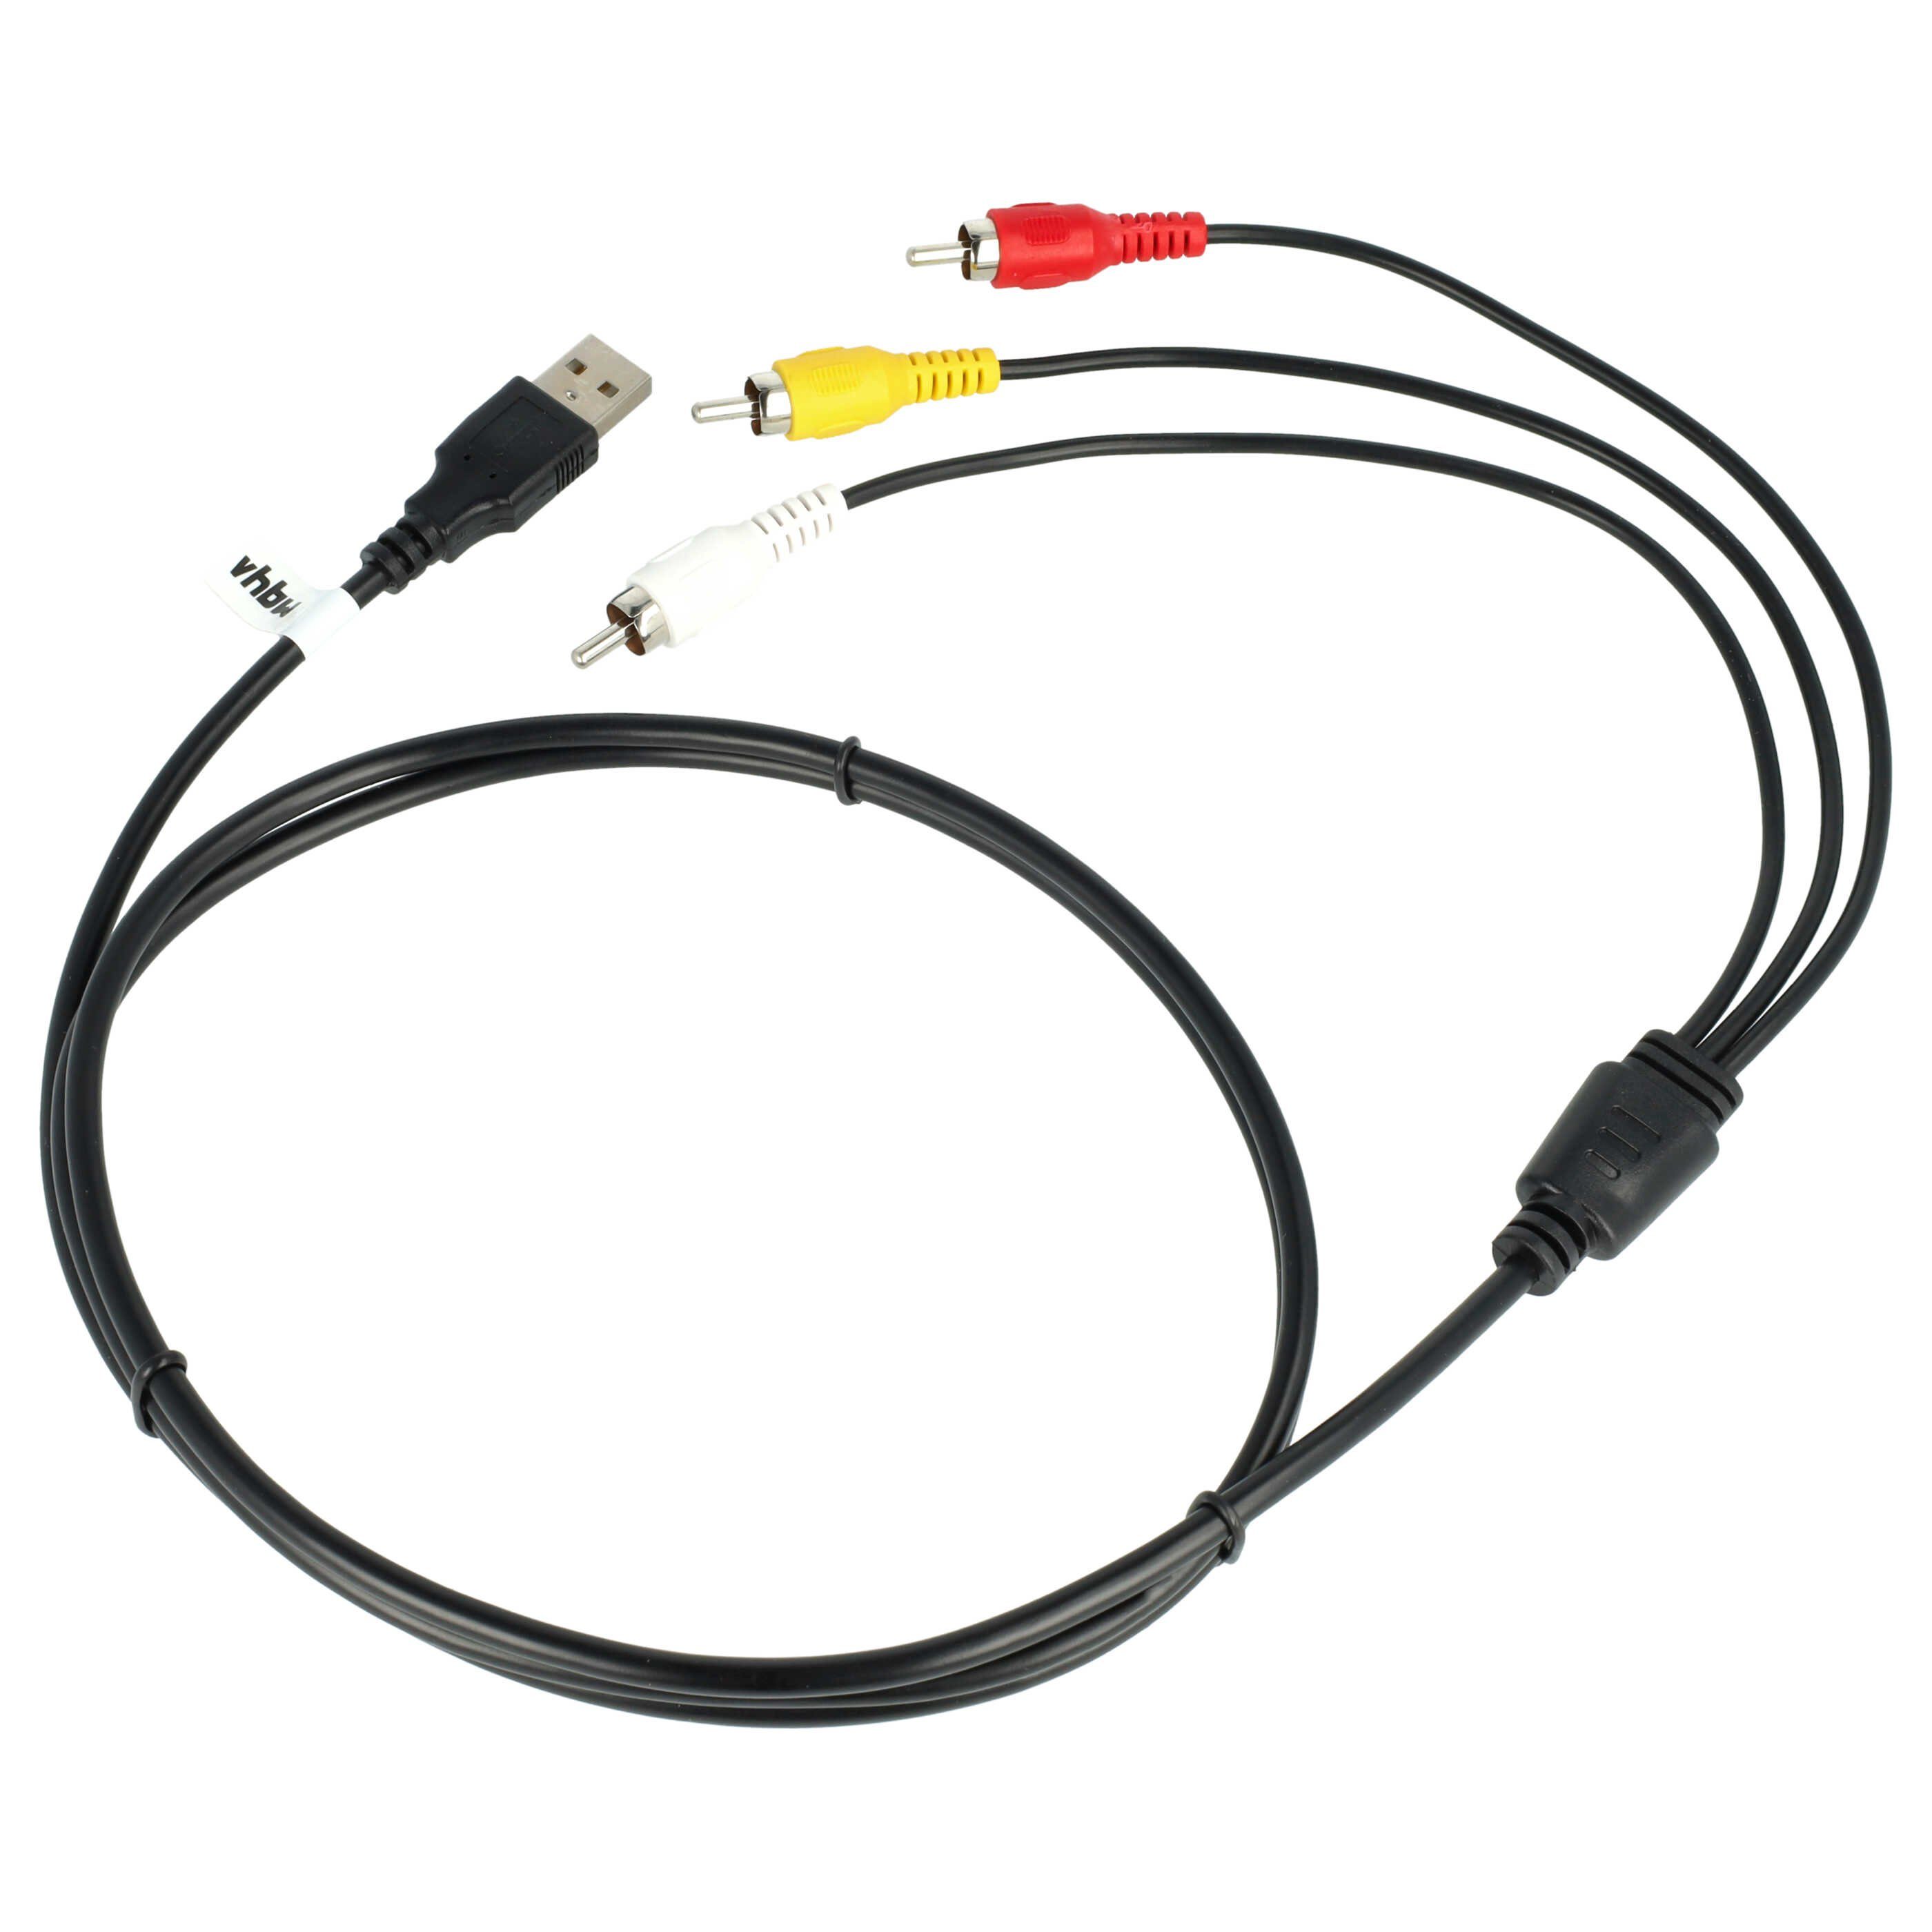 vhbw für USB-Kabel